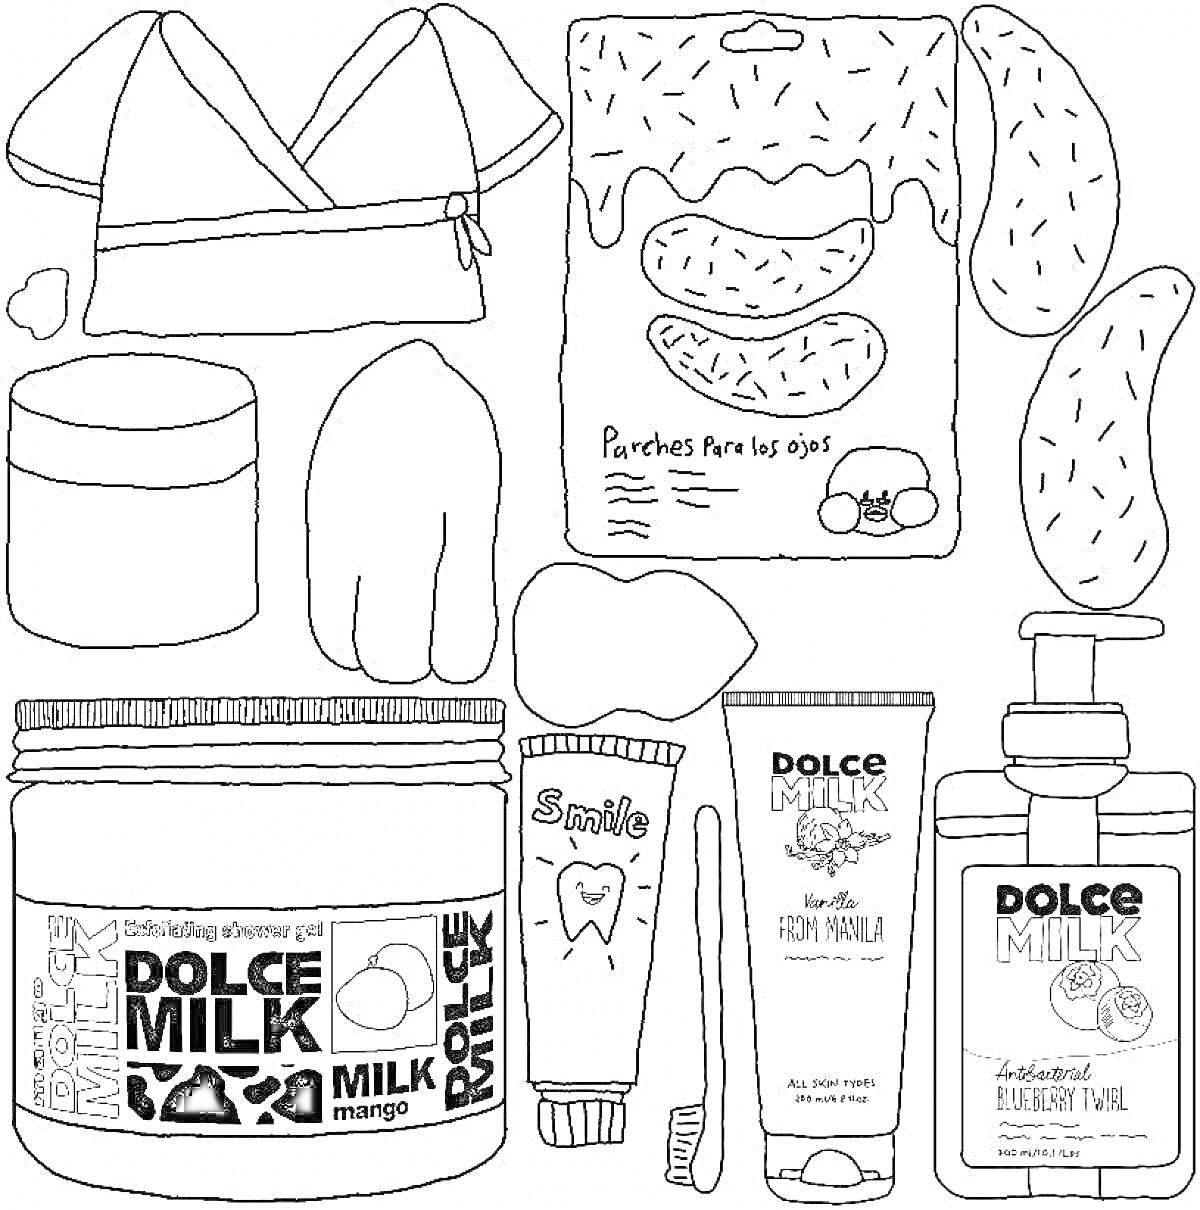 Раскраска Dolce Milk. Элементы: Пижама, коробка патчей для глаз, две подушки, органическая баночка, бальзам для губ, зубная щетка, паста, тюбик крема для лица, флакон с мылом.